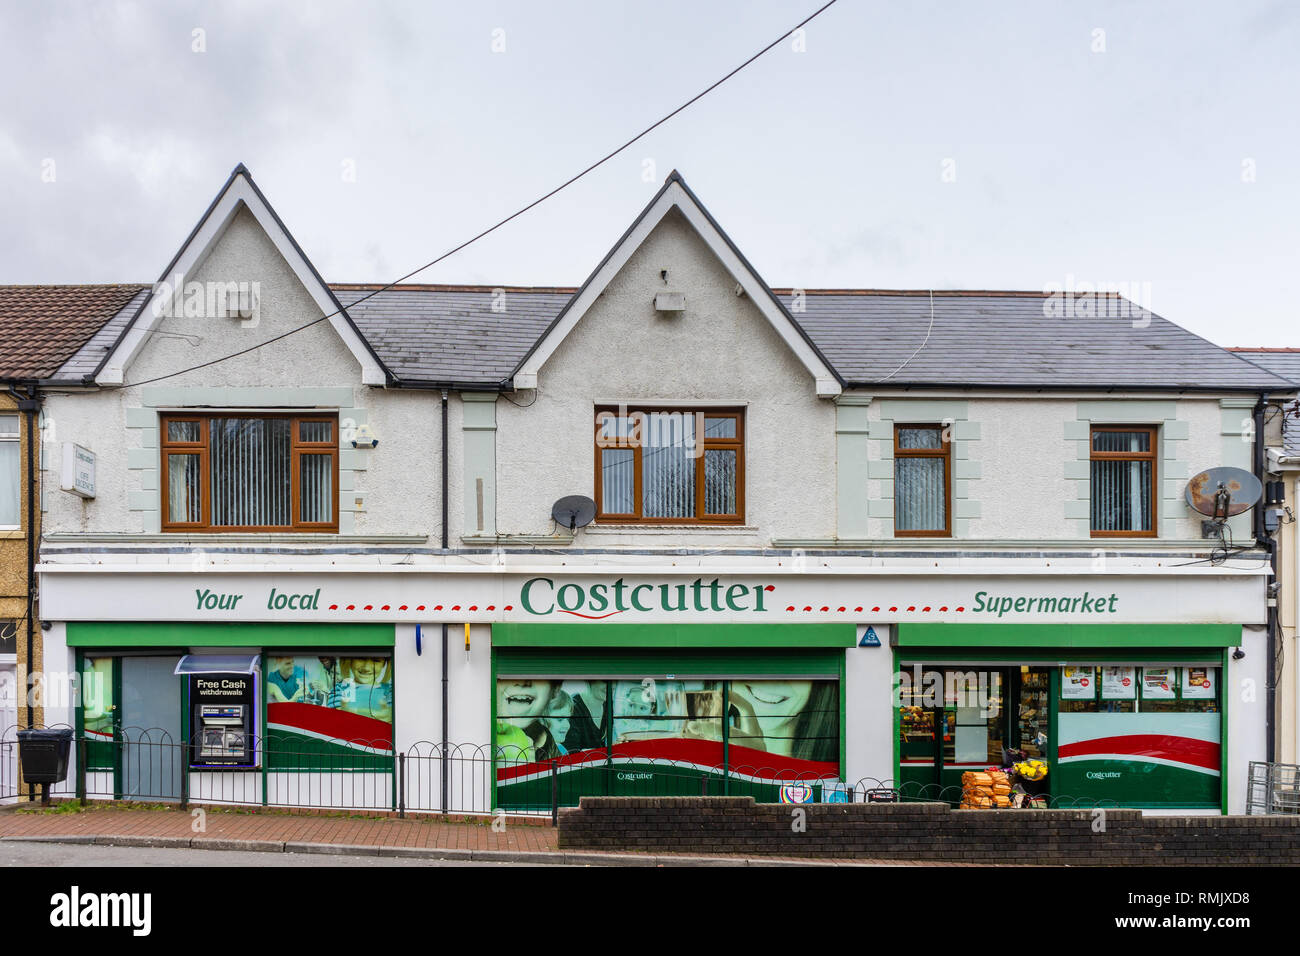 Un costcutter shop front dans sept Sœurs dans le sud du Pays de Galles, Pays de Galles, Royaume-Uni Banque D'Images